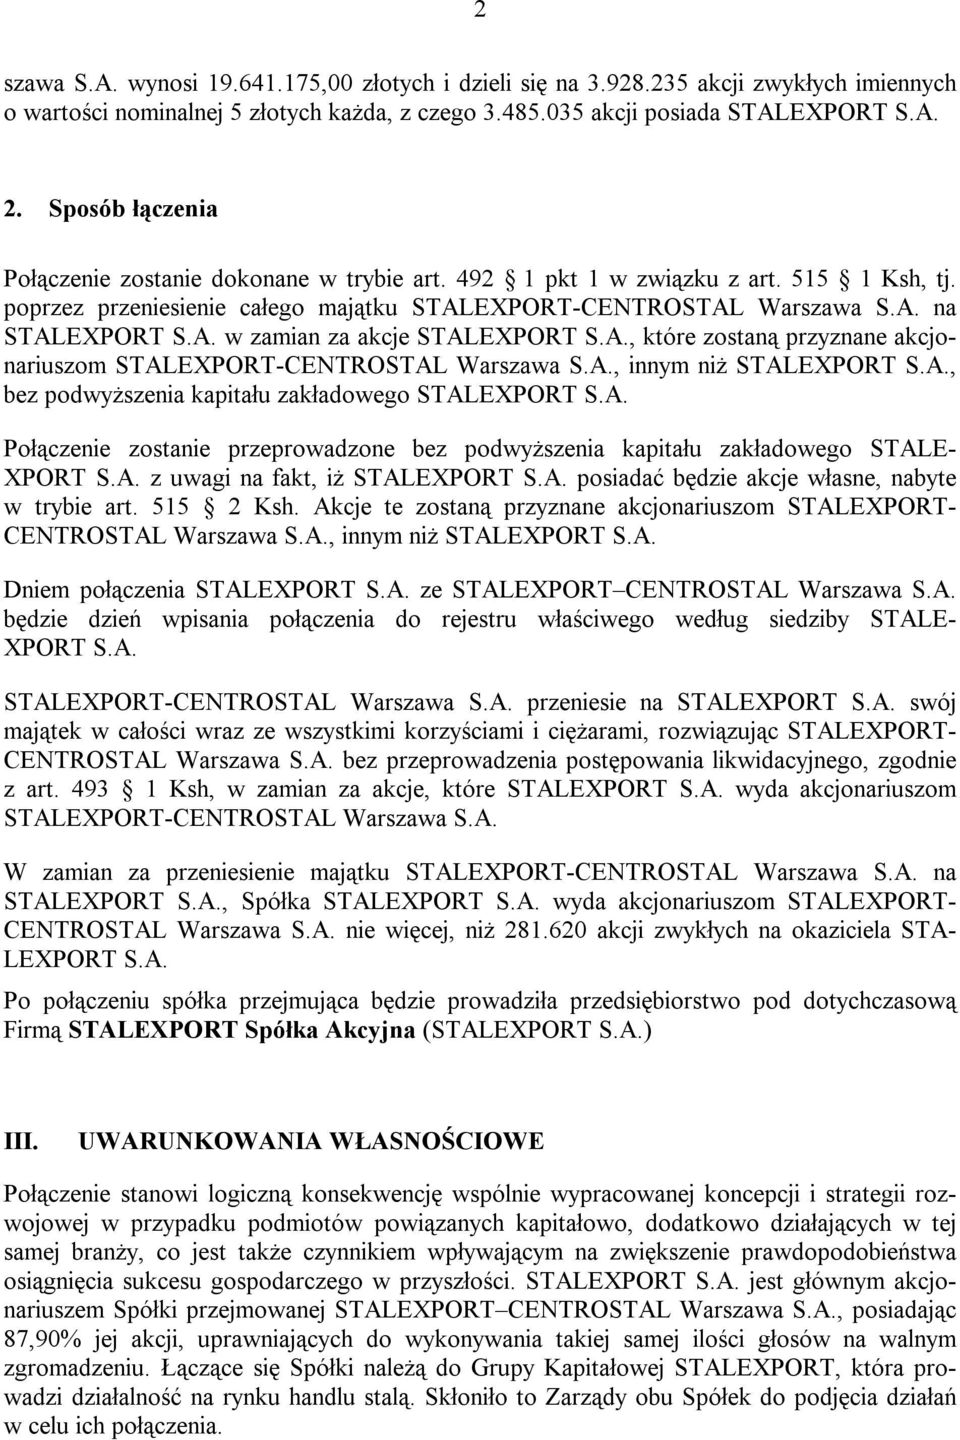 A., które zostaną przyznane akcjonariuszom STALEXPORT-CENTROSTAL Warszawa S.A., innym niż STALEXPORT S.A., bez podwyższenia kapitału zakładowego STALEXPORT S.A. Połączenie zostanie przeprowadzone bez podwyższenia kapitału zakładowego STALE- XPORT S.